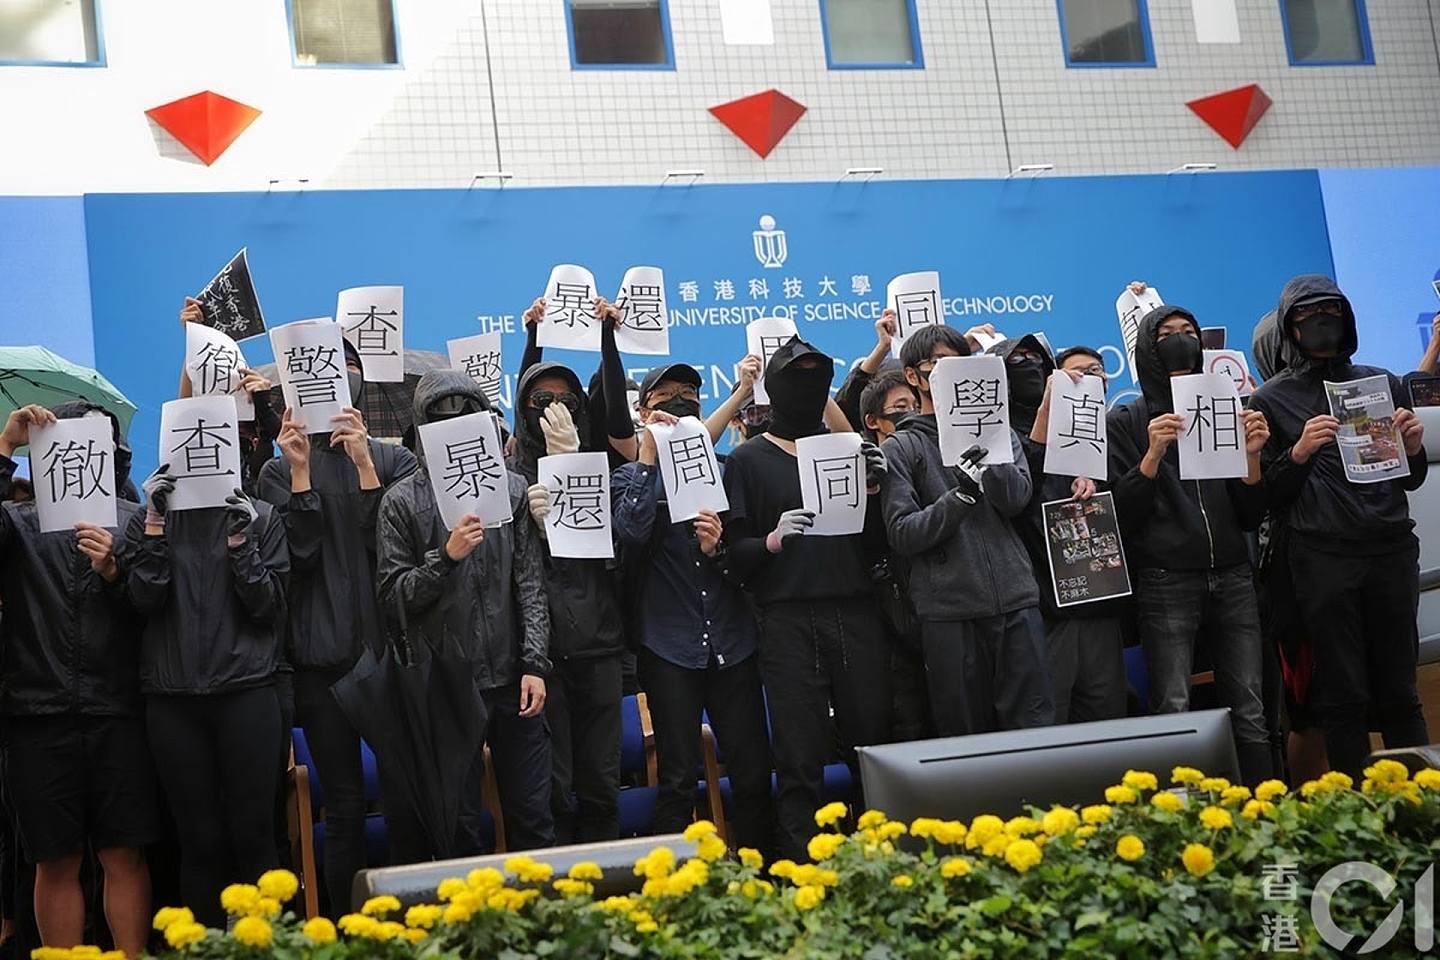 11月7日科大毕业礼，有学生一度冲上主礼台，展示要求彻查警暴、还原周同学真相的表语。 学生十分钟内离开。 （李泽彤摄）